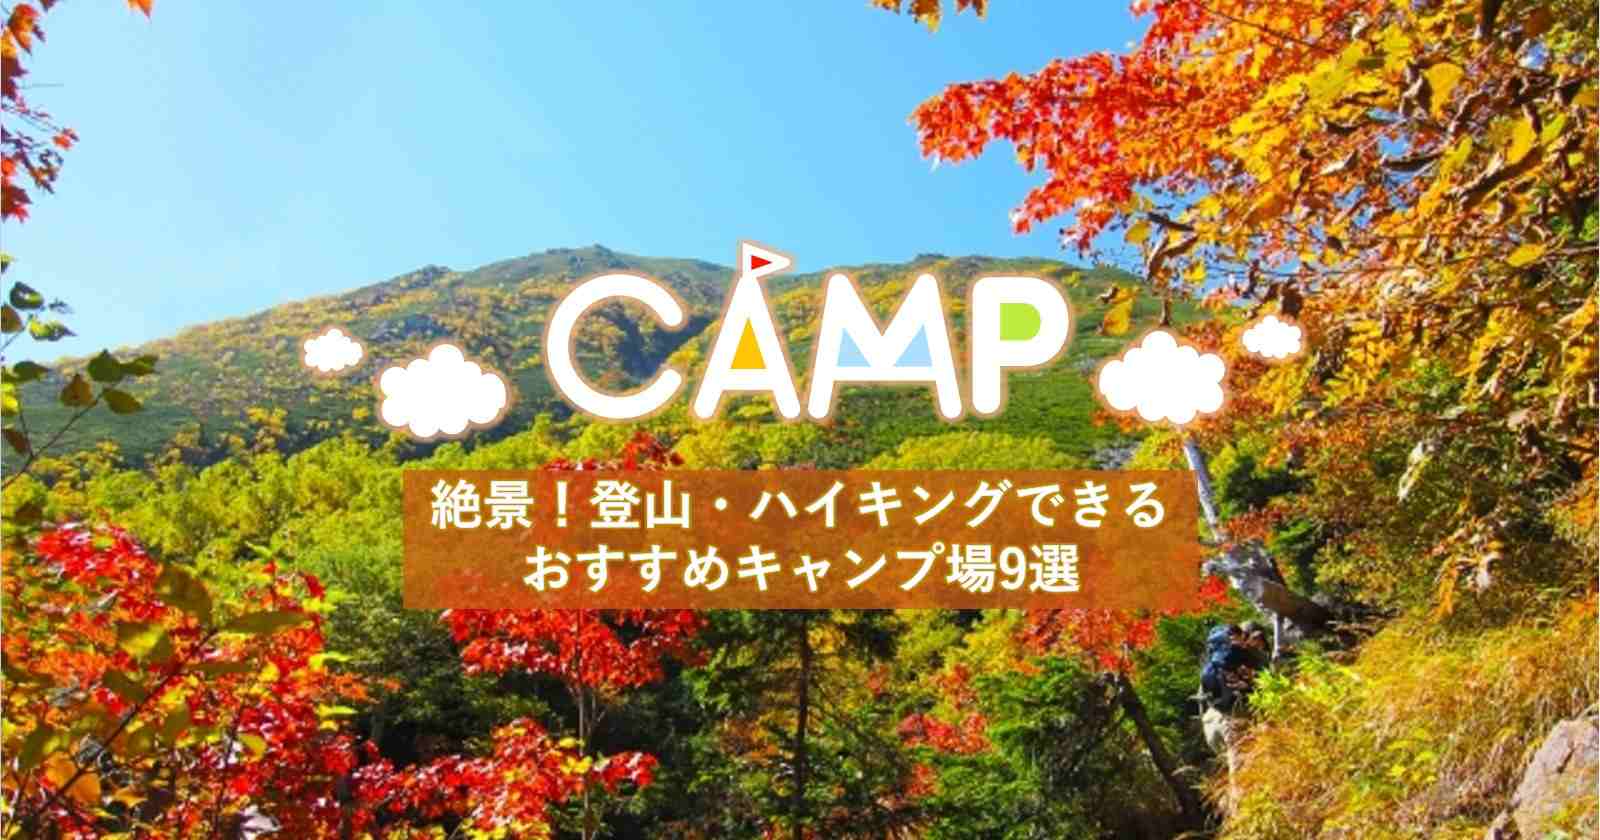 絶景を楽しみながら 登山やハイキングができるおすすめキャンプ場9選 キャンプ アウトドアのtakibi タキビ